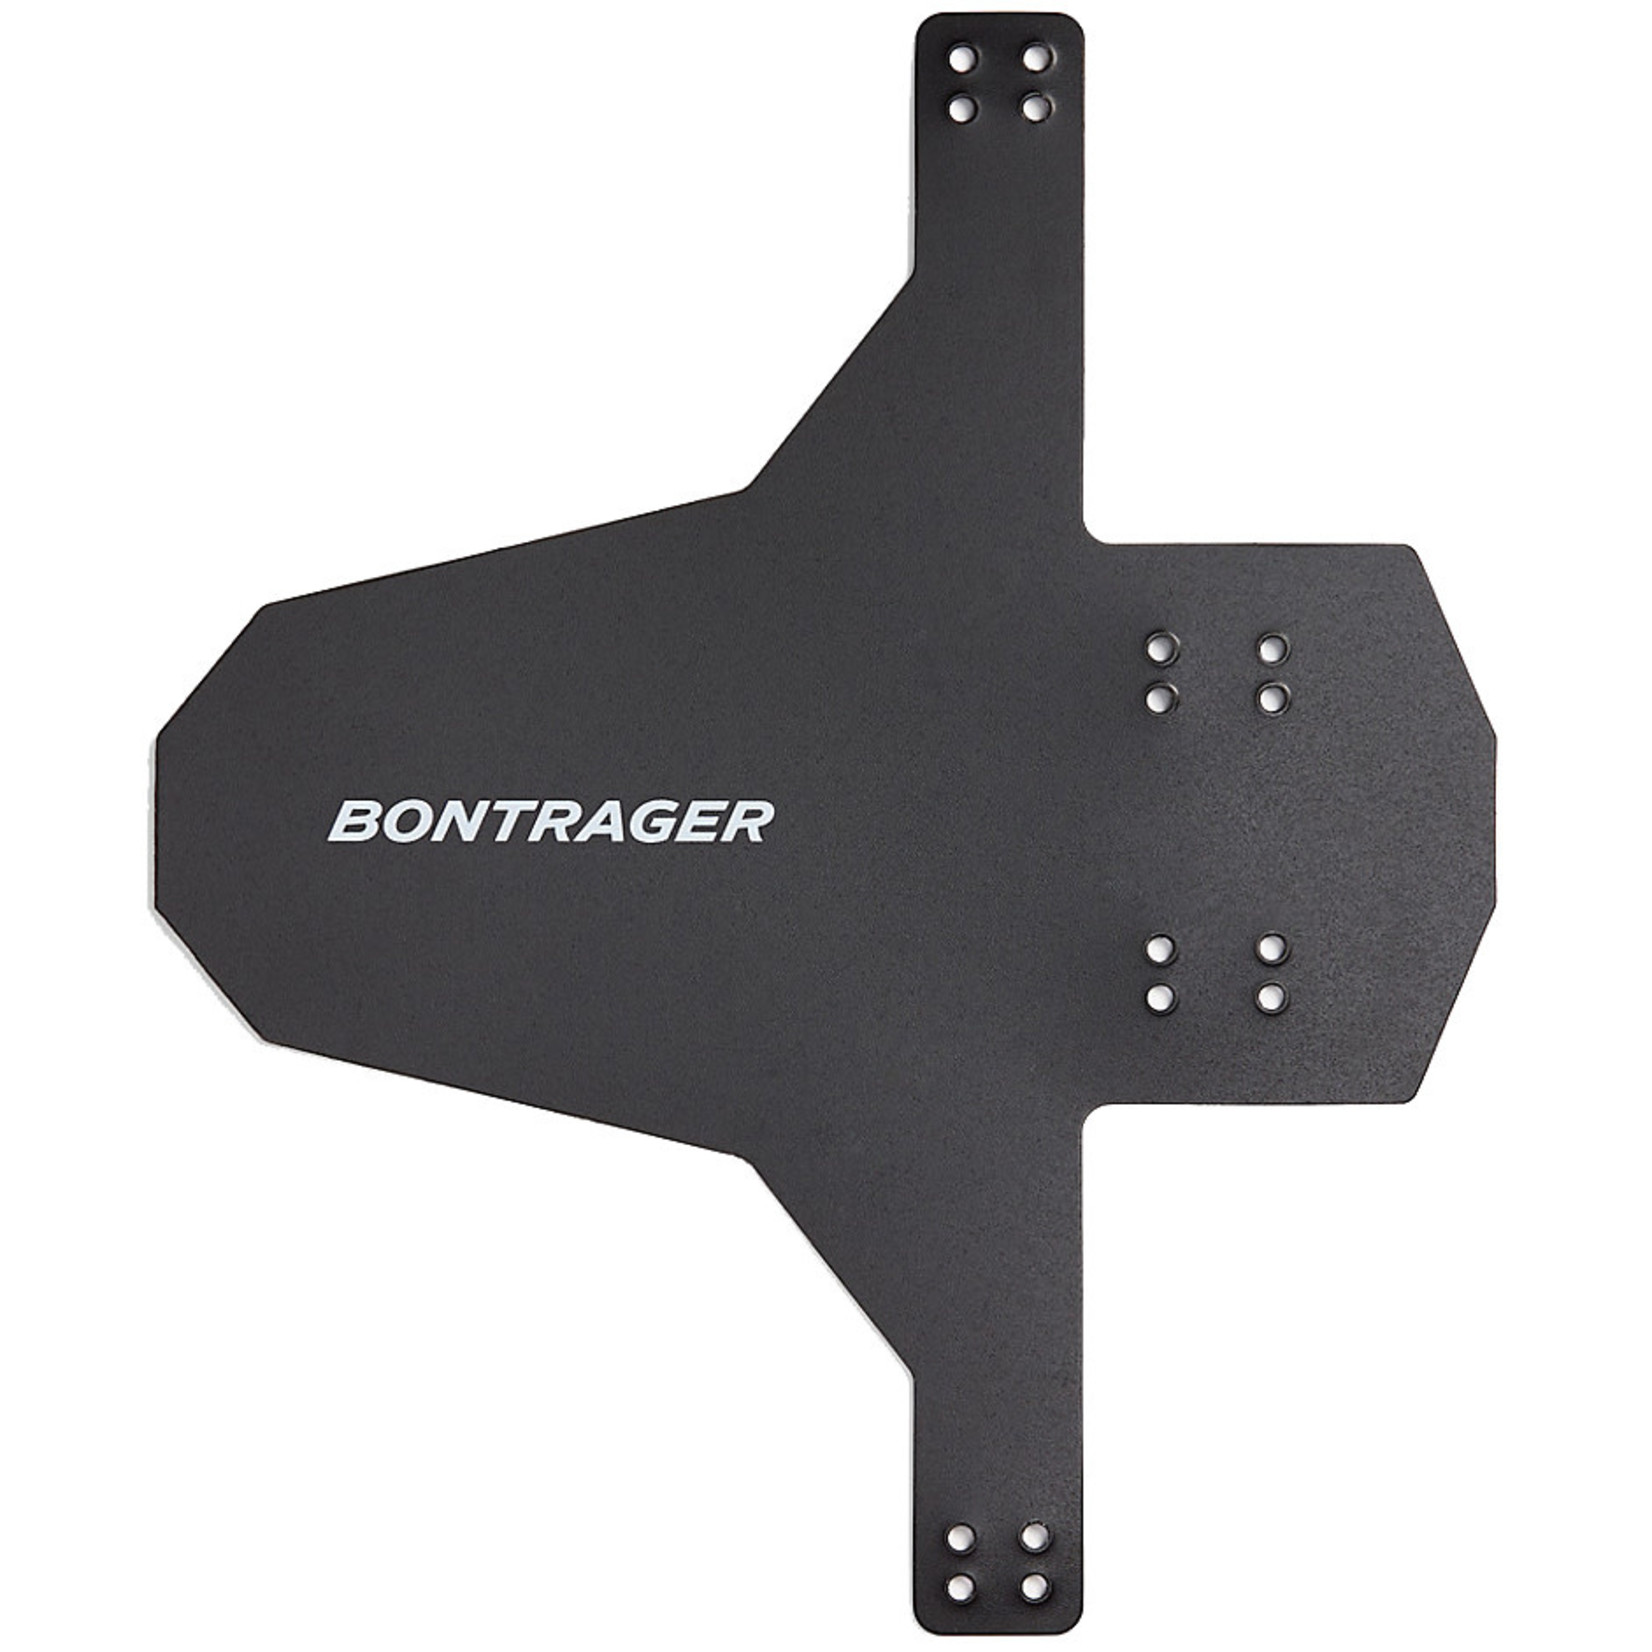 BONTRAGER Bontrager Enduro Front Fender